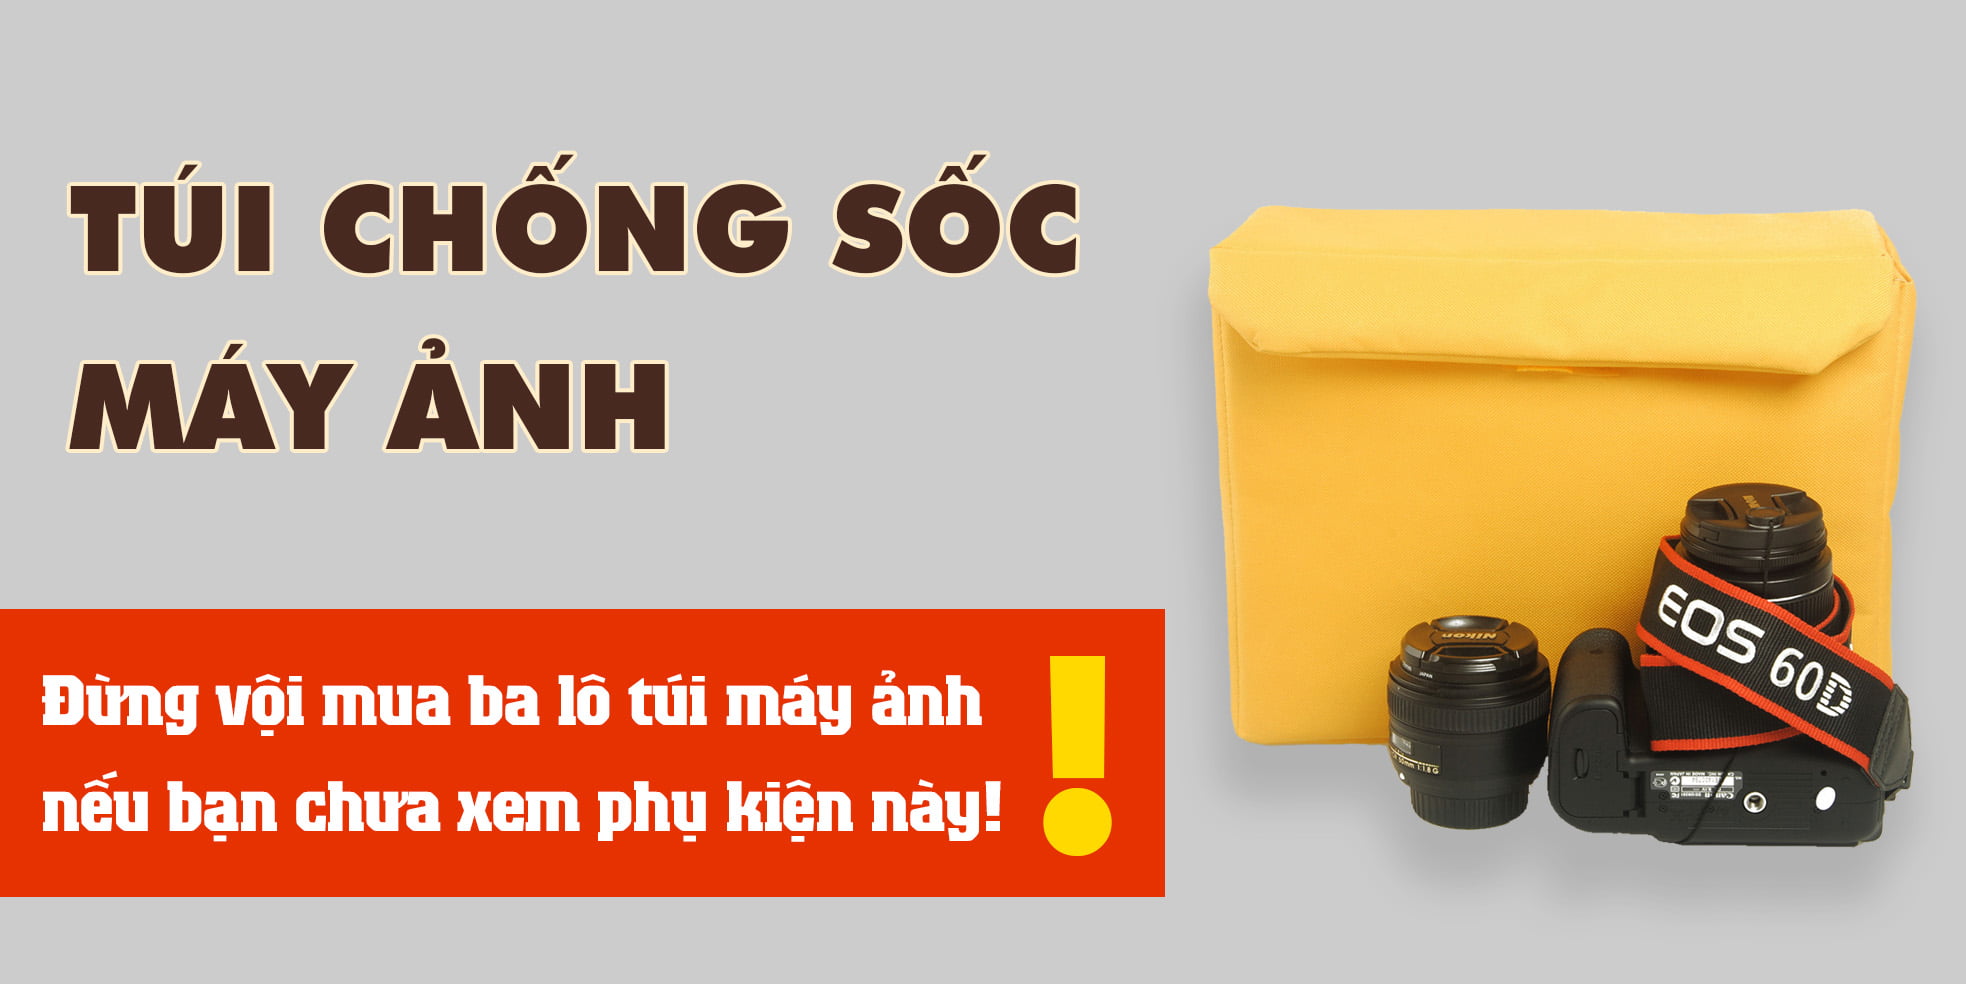 Tui Chong Soc May Anh Banner 2